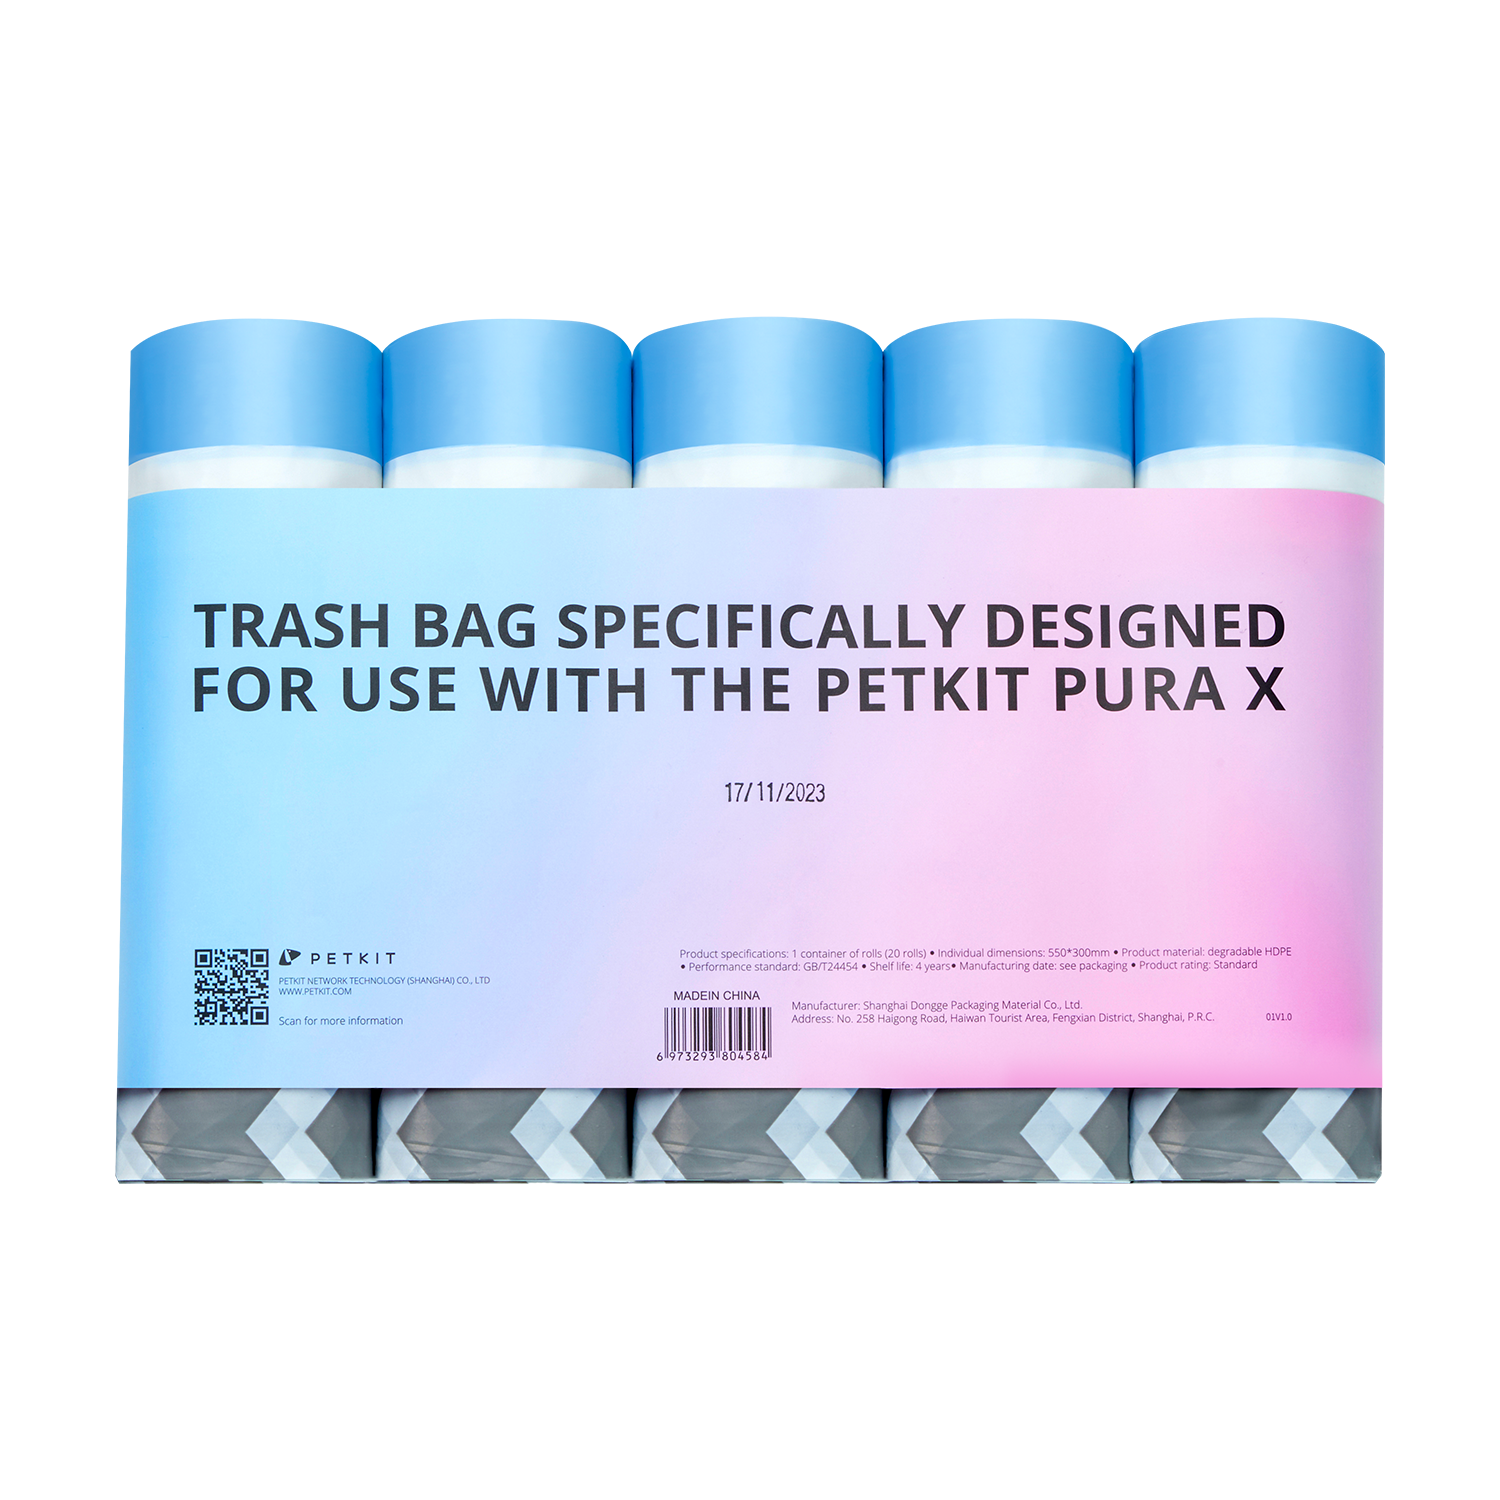 PURA X / PURA MAX Trash Bag